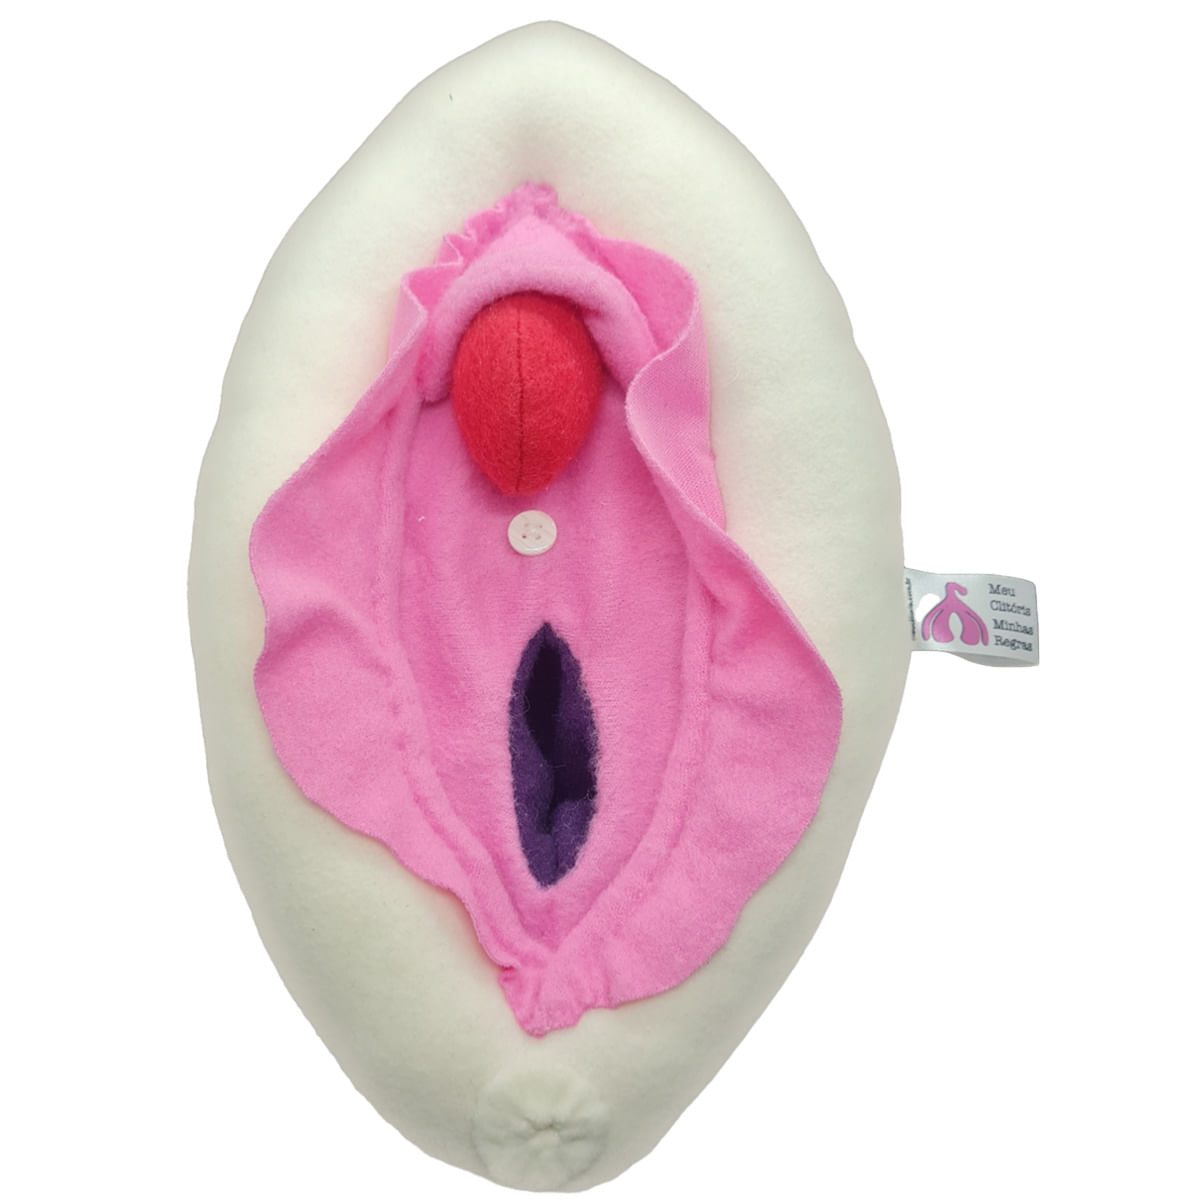 Vulva em Tecido com Vagina Uretra e Clitóris Meu Clitóris, Minhas Regras